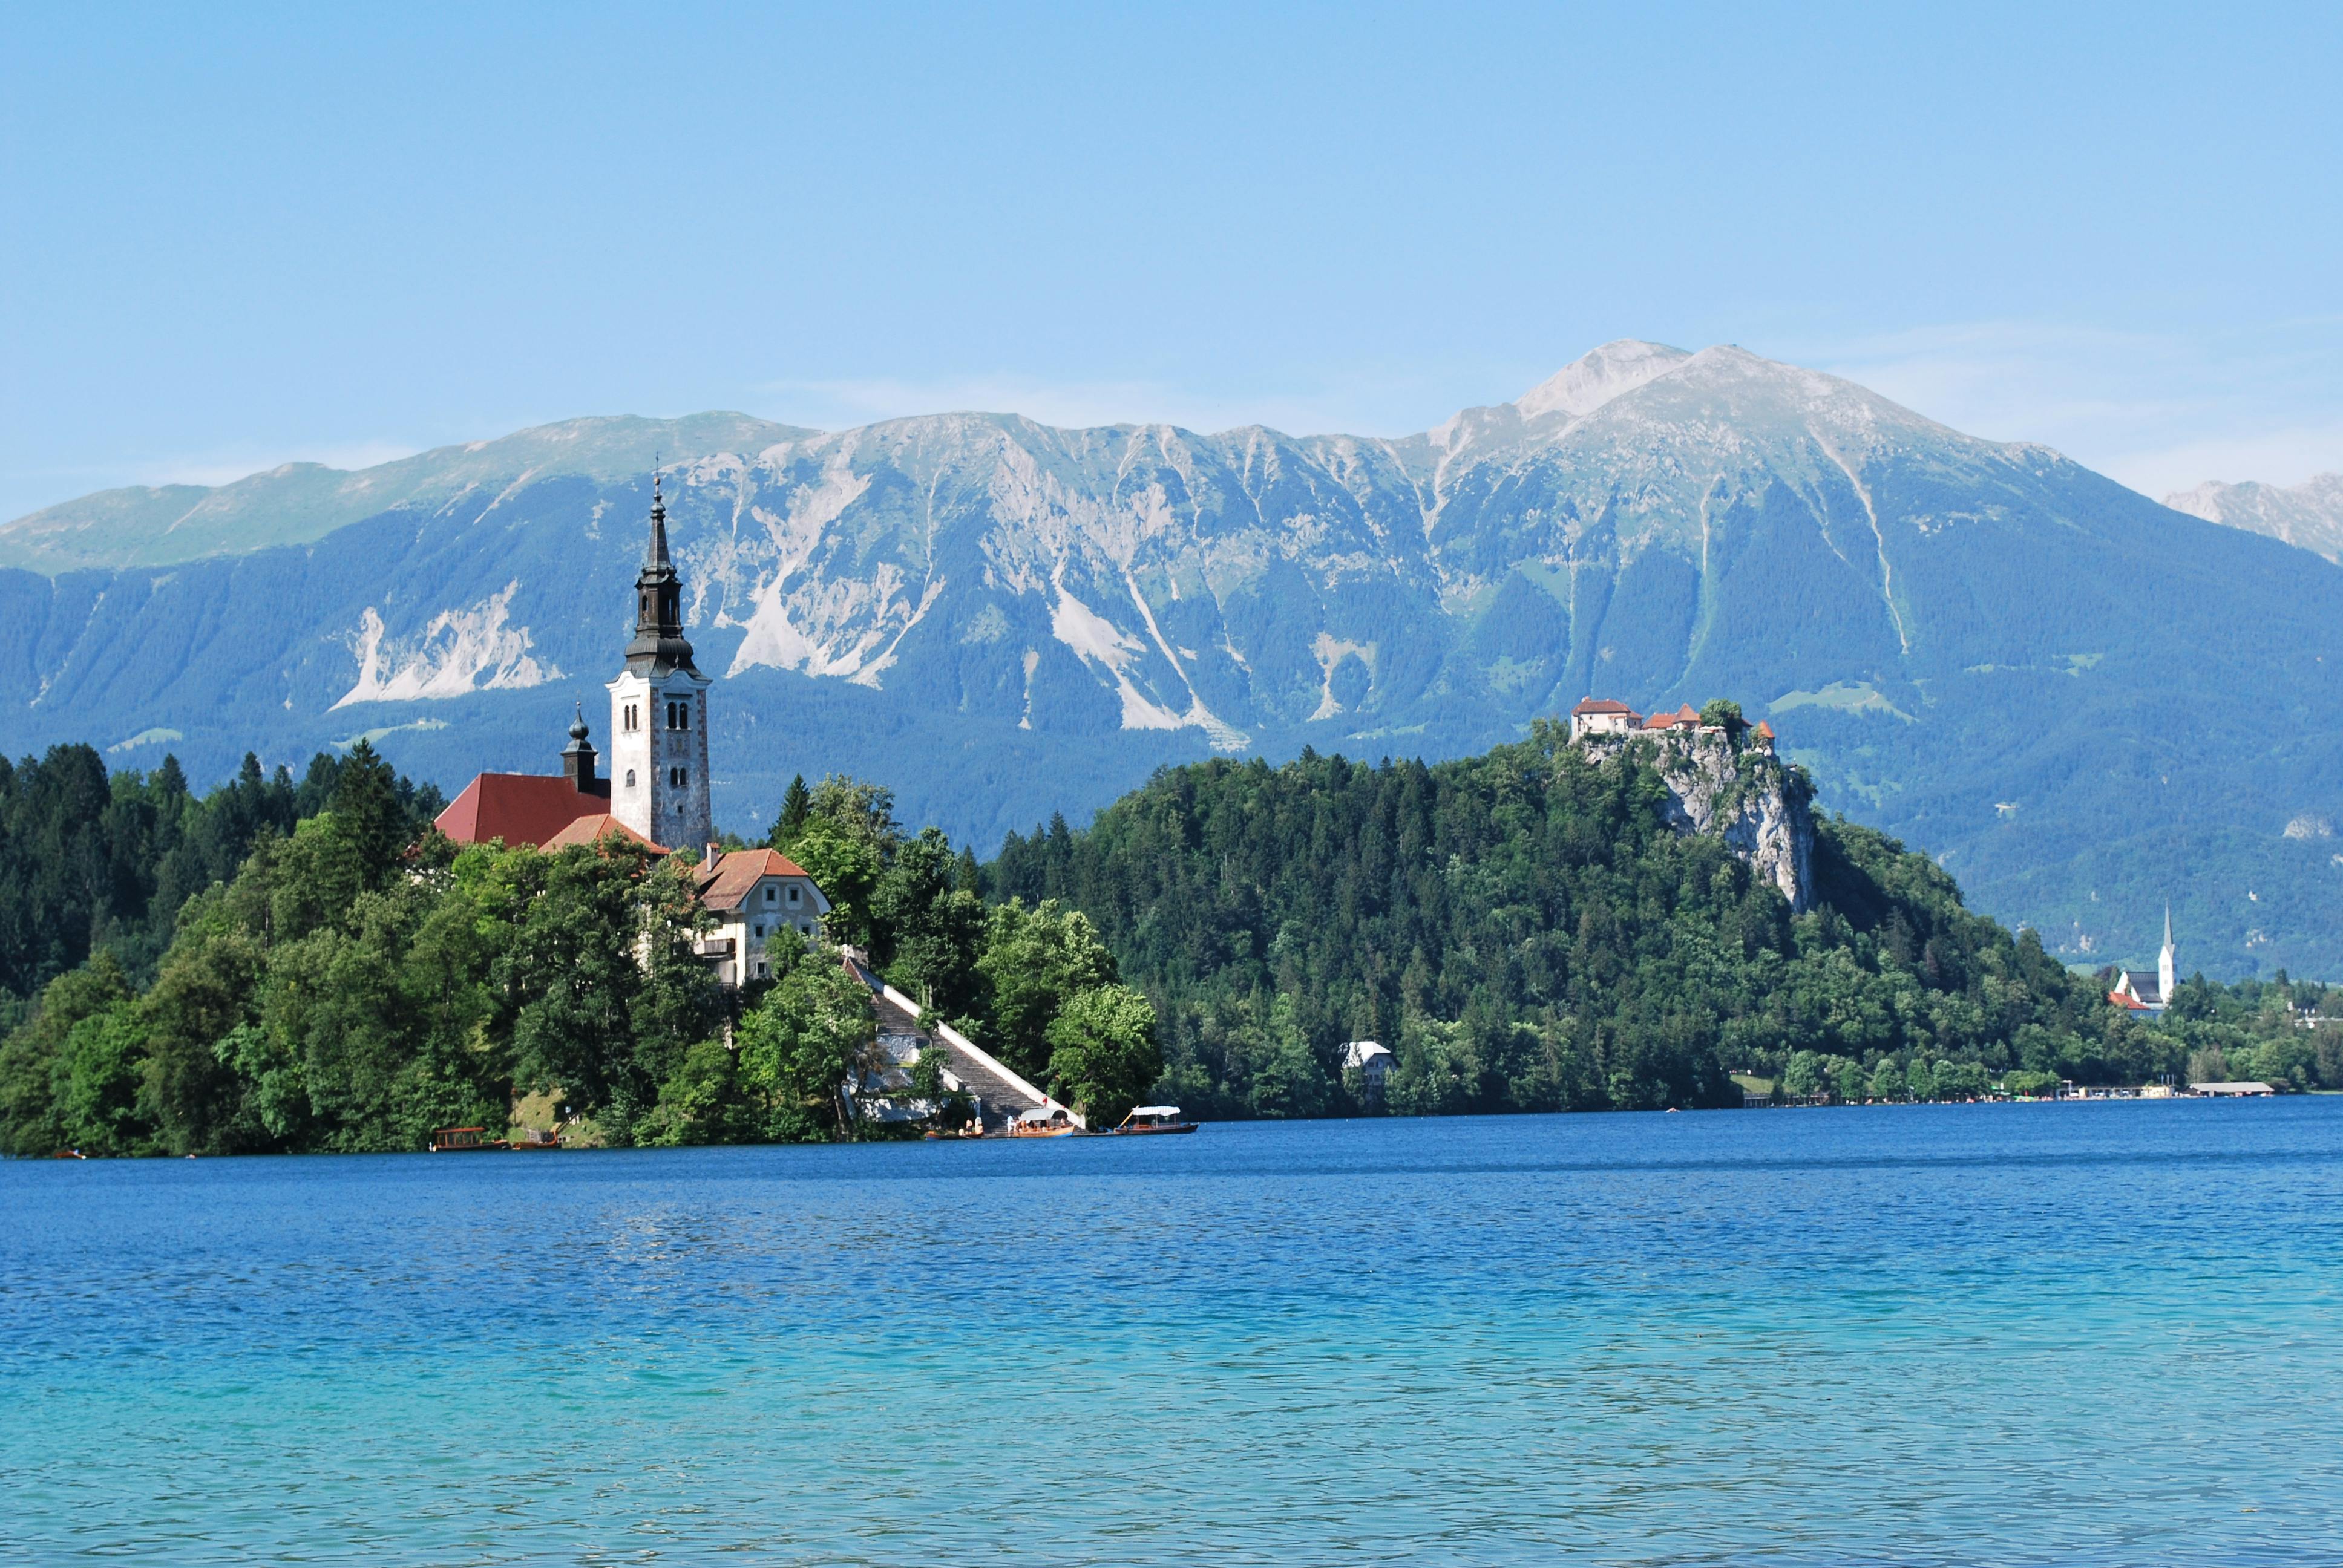 Excursão de meio dia ao Lago Bled saindo de Liubliana